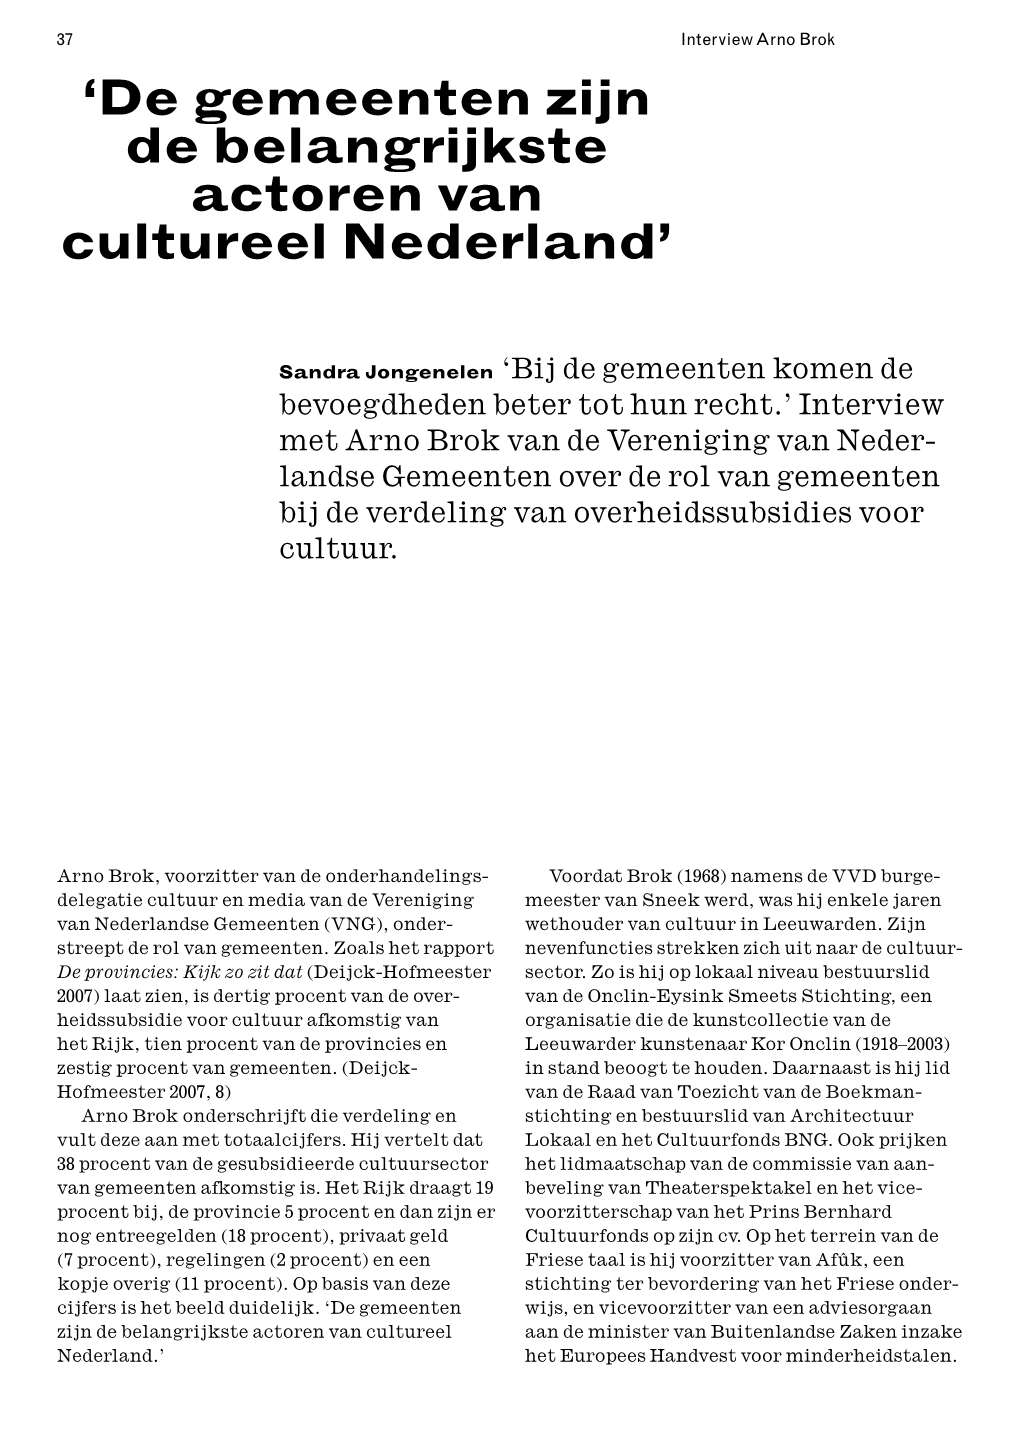 'De Gemeenten Zijn De Belangrijkste Actoren Van Cultureel Nederland'